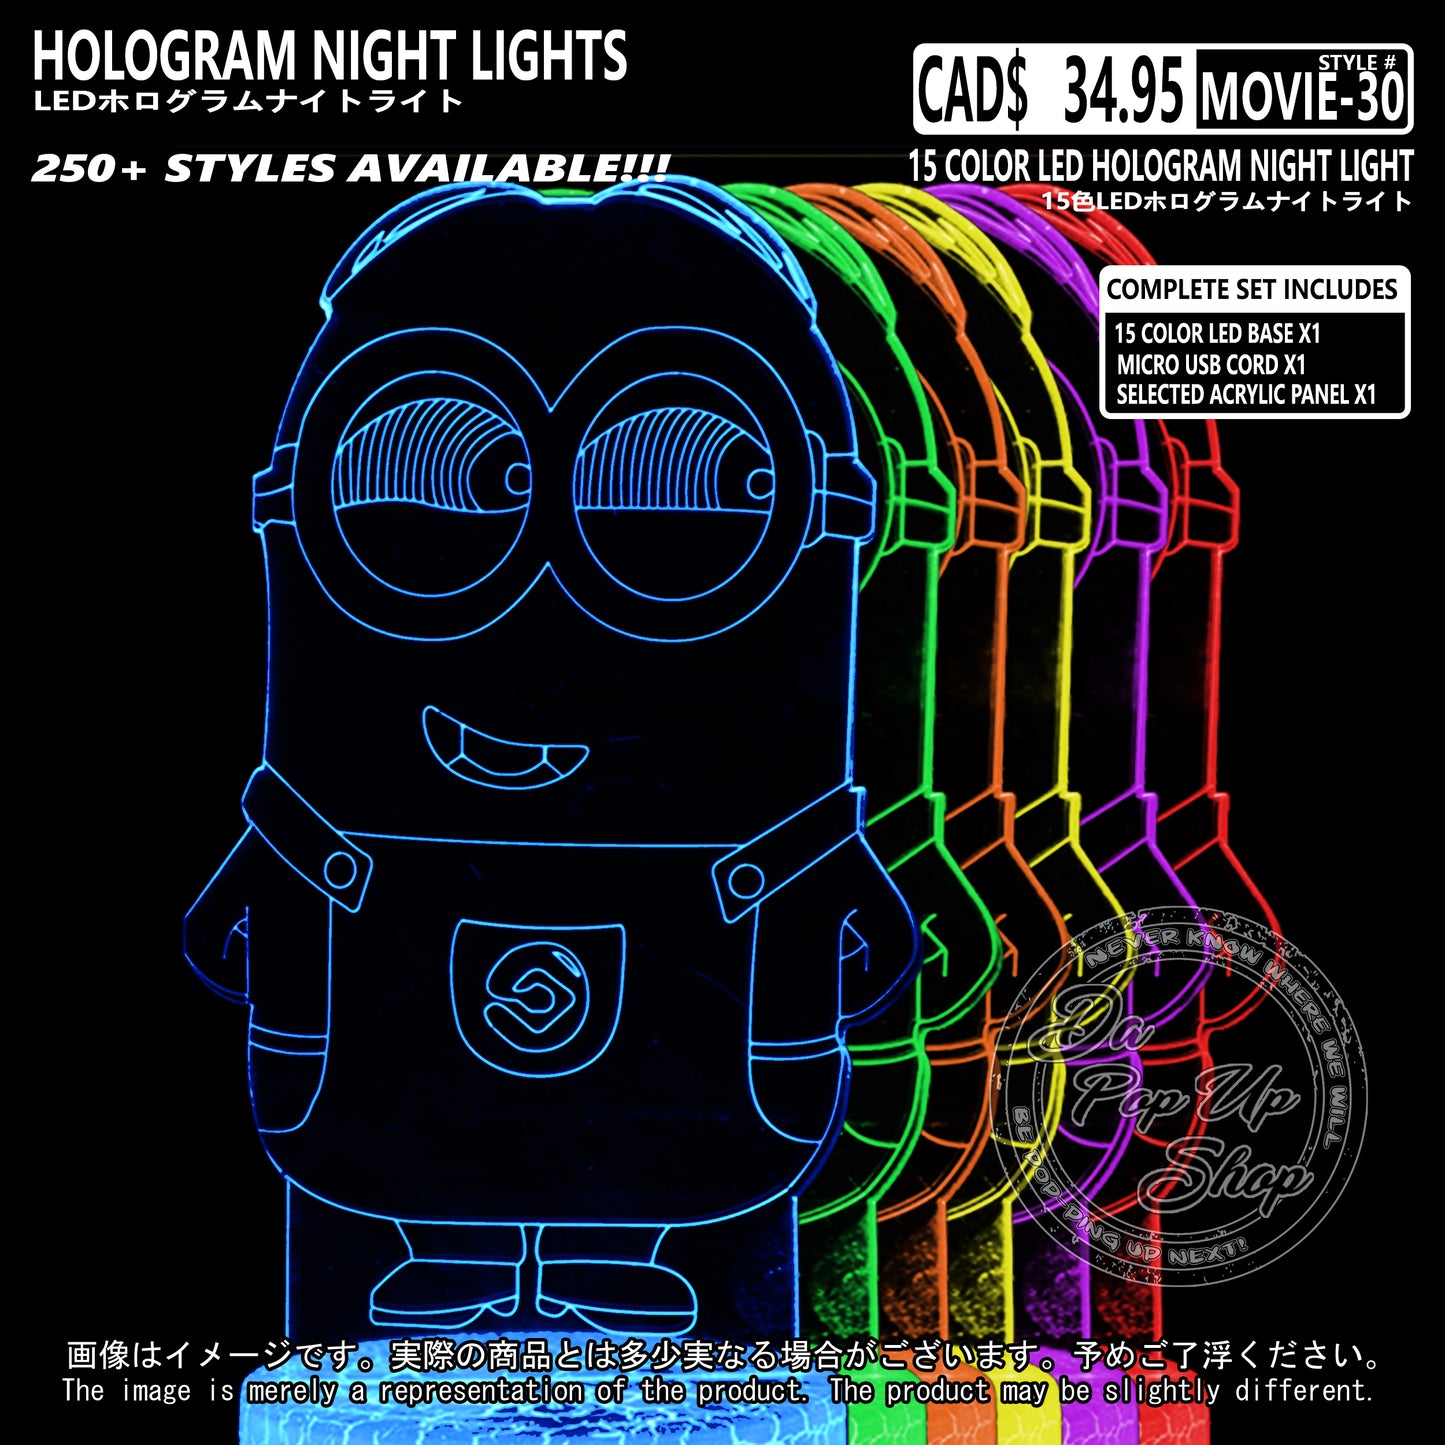 (MOVIE-30) Minions Pixar Hologram LED Night Light